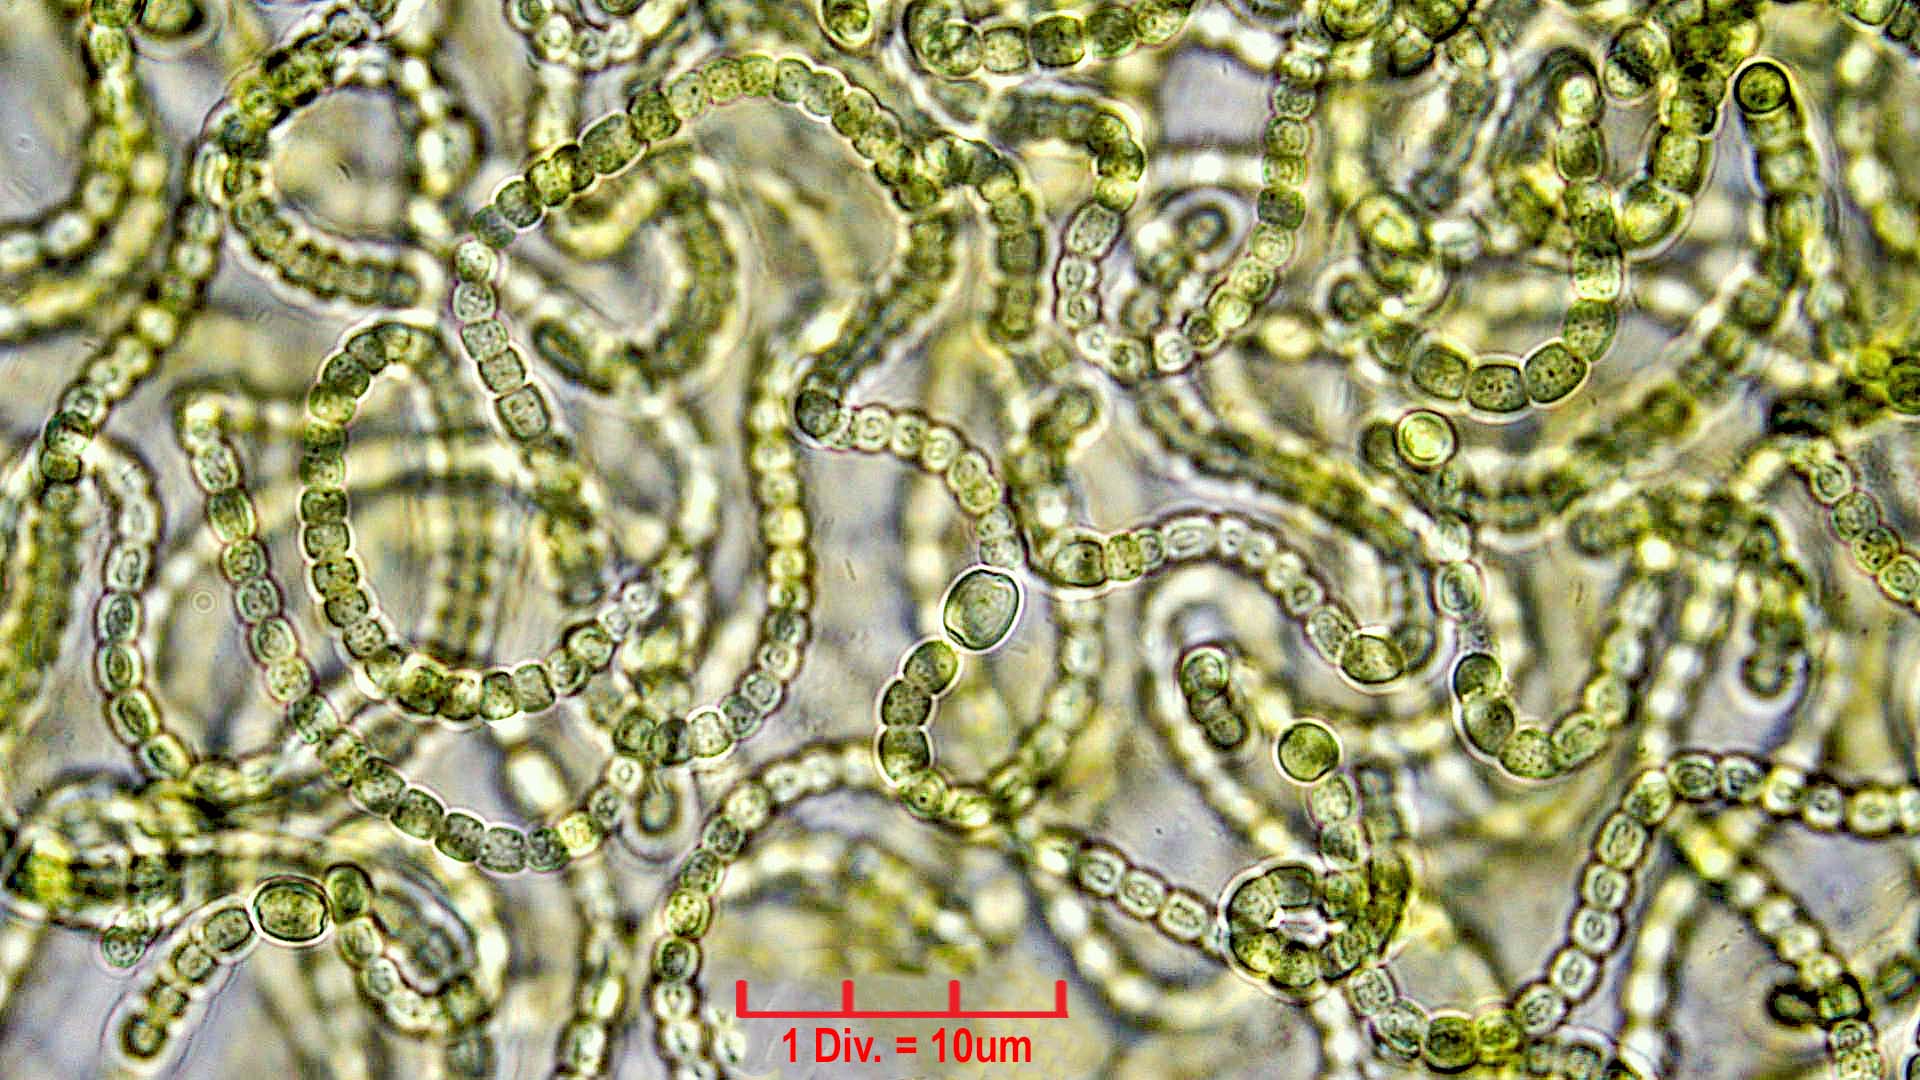 Cyanobacteria/Nostocales/Nostocaceae/Nostoc/verrucosum/nostoc-verrucosum-610.jpg